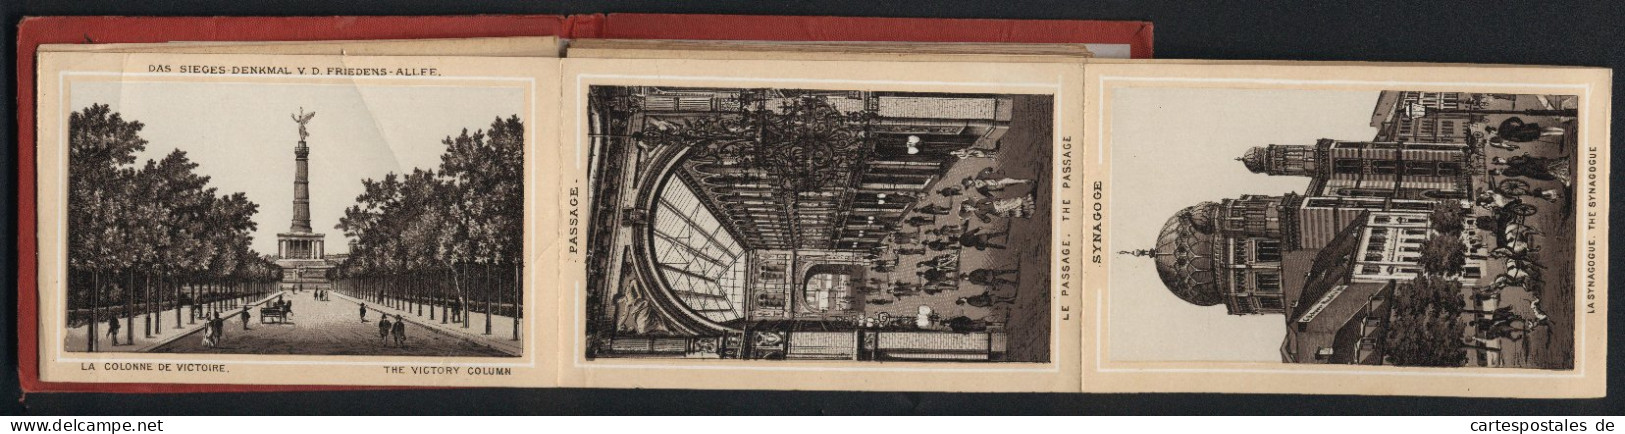 Leporello-Album Berlin Mit 25 Lithographie-Ansichten, Synagoge, Mausoleum, Flora Charlottenburg, Bahnhof Friedrichstra  - Lithographien